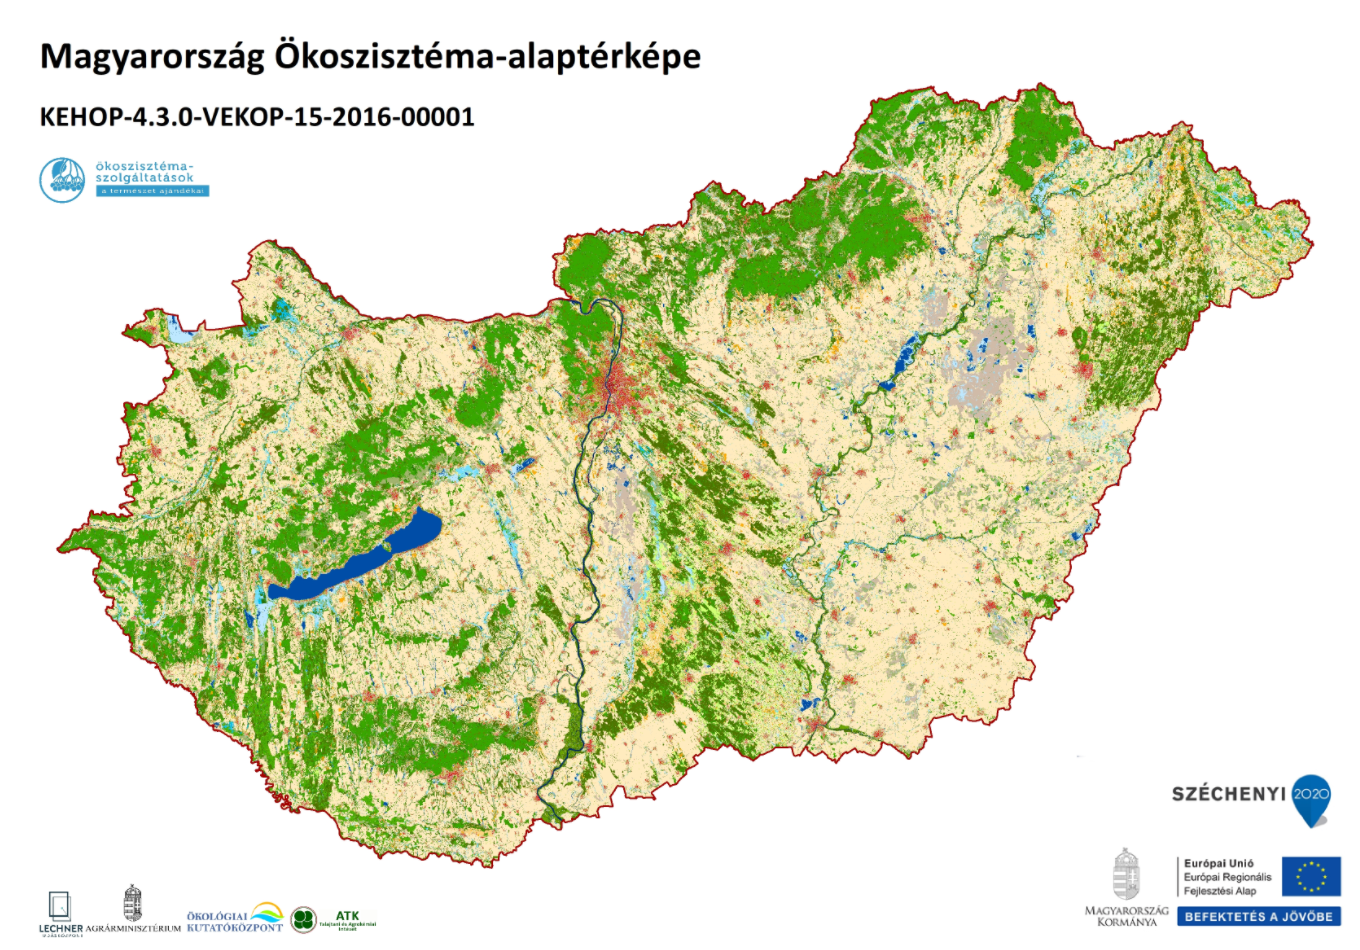 Magyarország Ökoszisztéma-alaptérképe, 2019